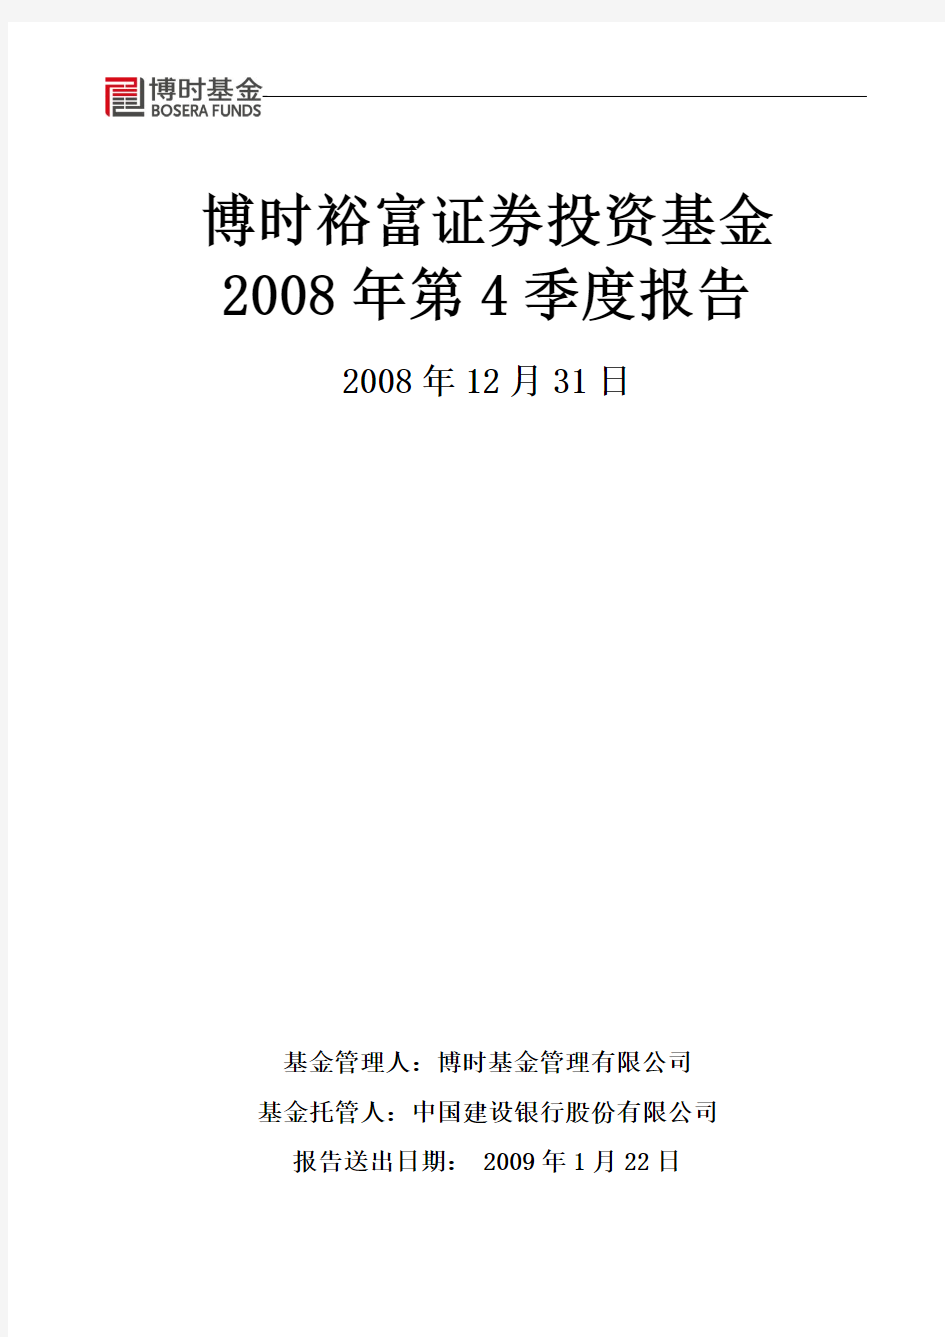 博时裕富证券投资基金2008年第4季度报告